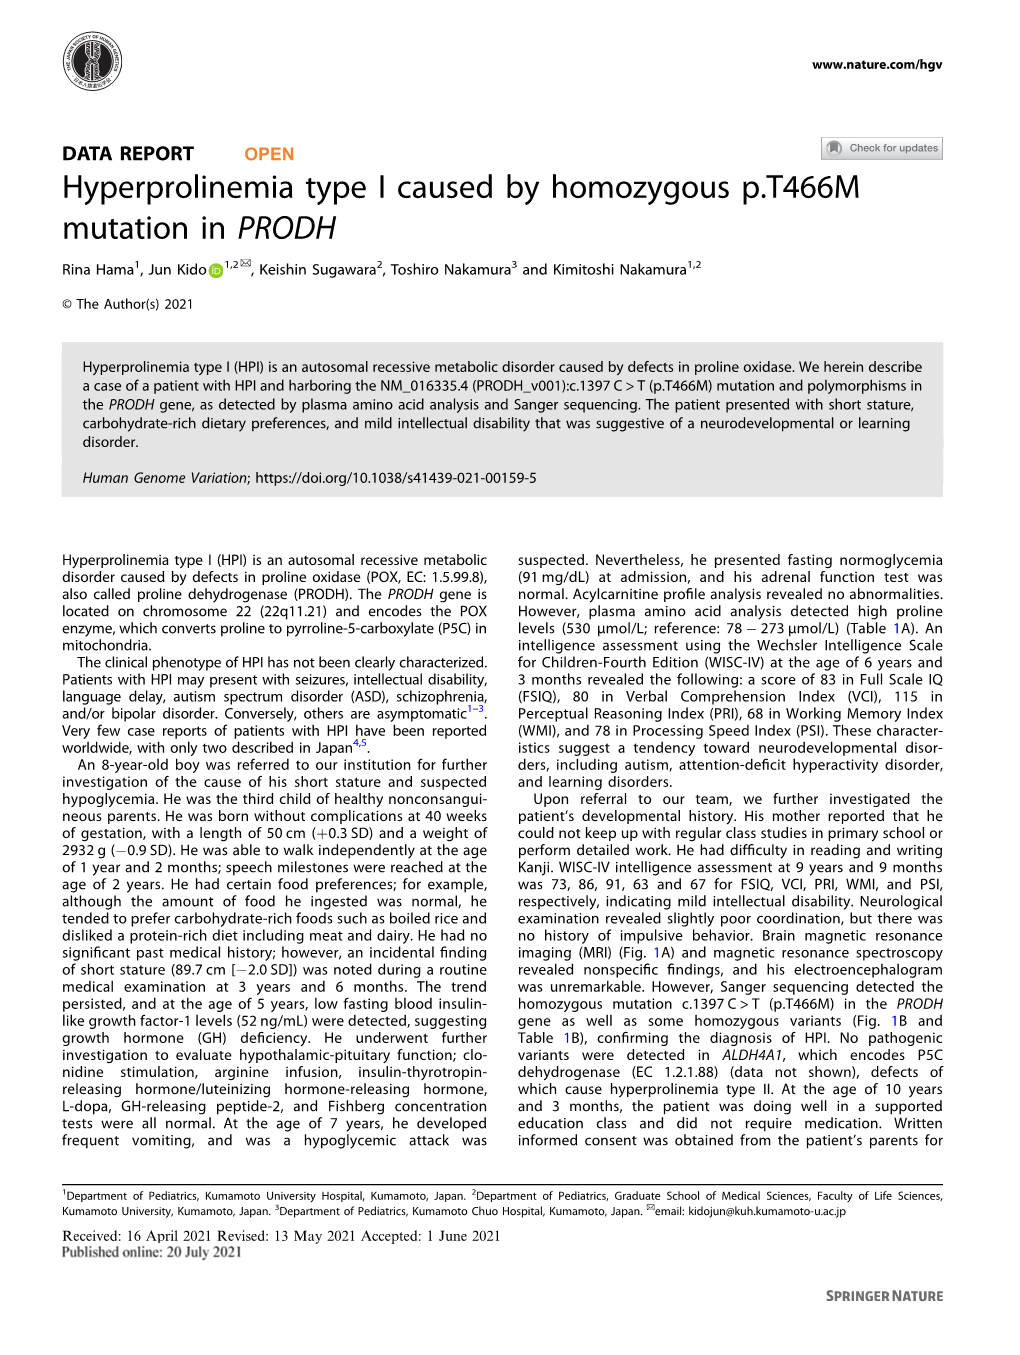 Hyperprolinemia Type I Caused by Homozygous P.T466M Mutation in PRODH ✉ Rina Hama1, Jun Kido 1,2 , Keishin Sugawara2, Toshiro Nakamura3 and Kimitoshi Nakamura1,2